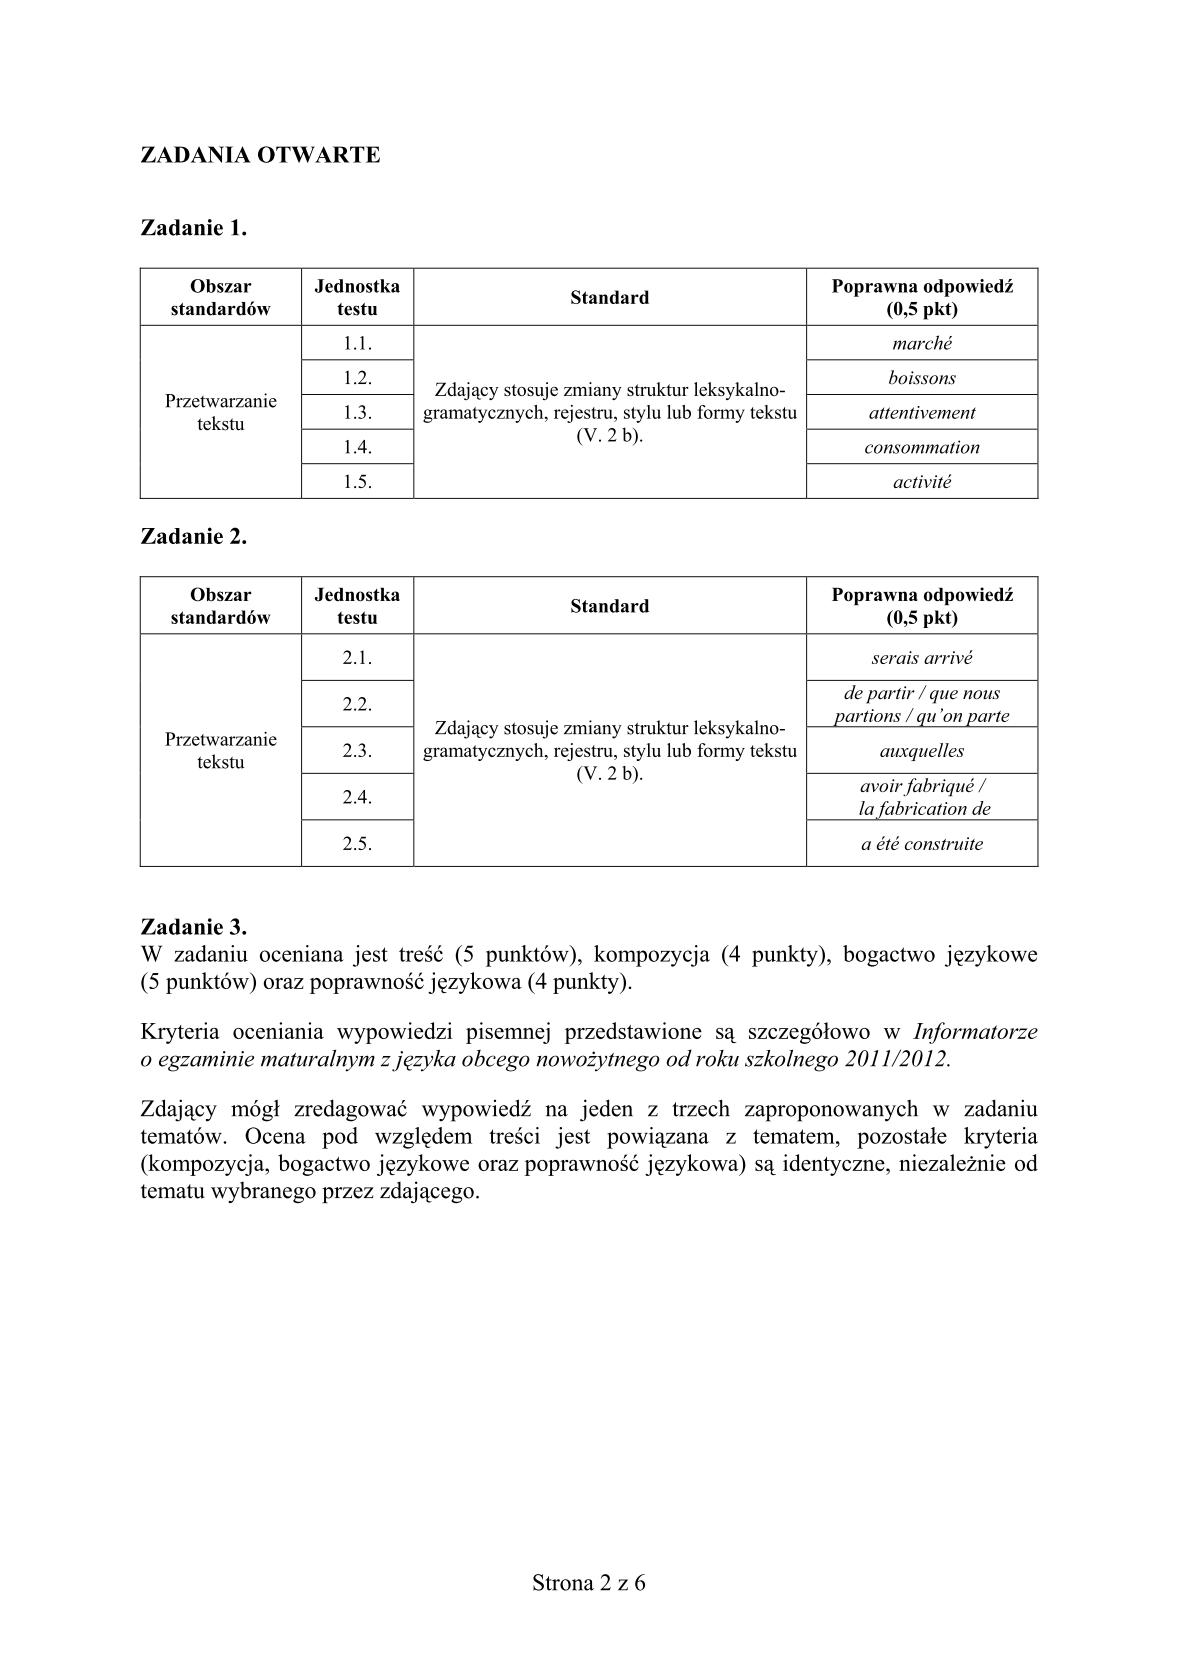 odpowiedzi-francuski-poziom-rozszerzony-matura-2014-str.2